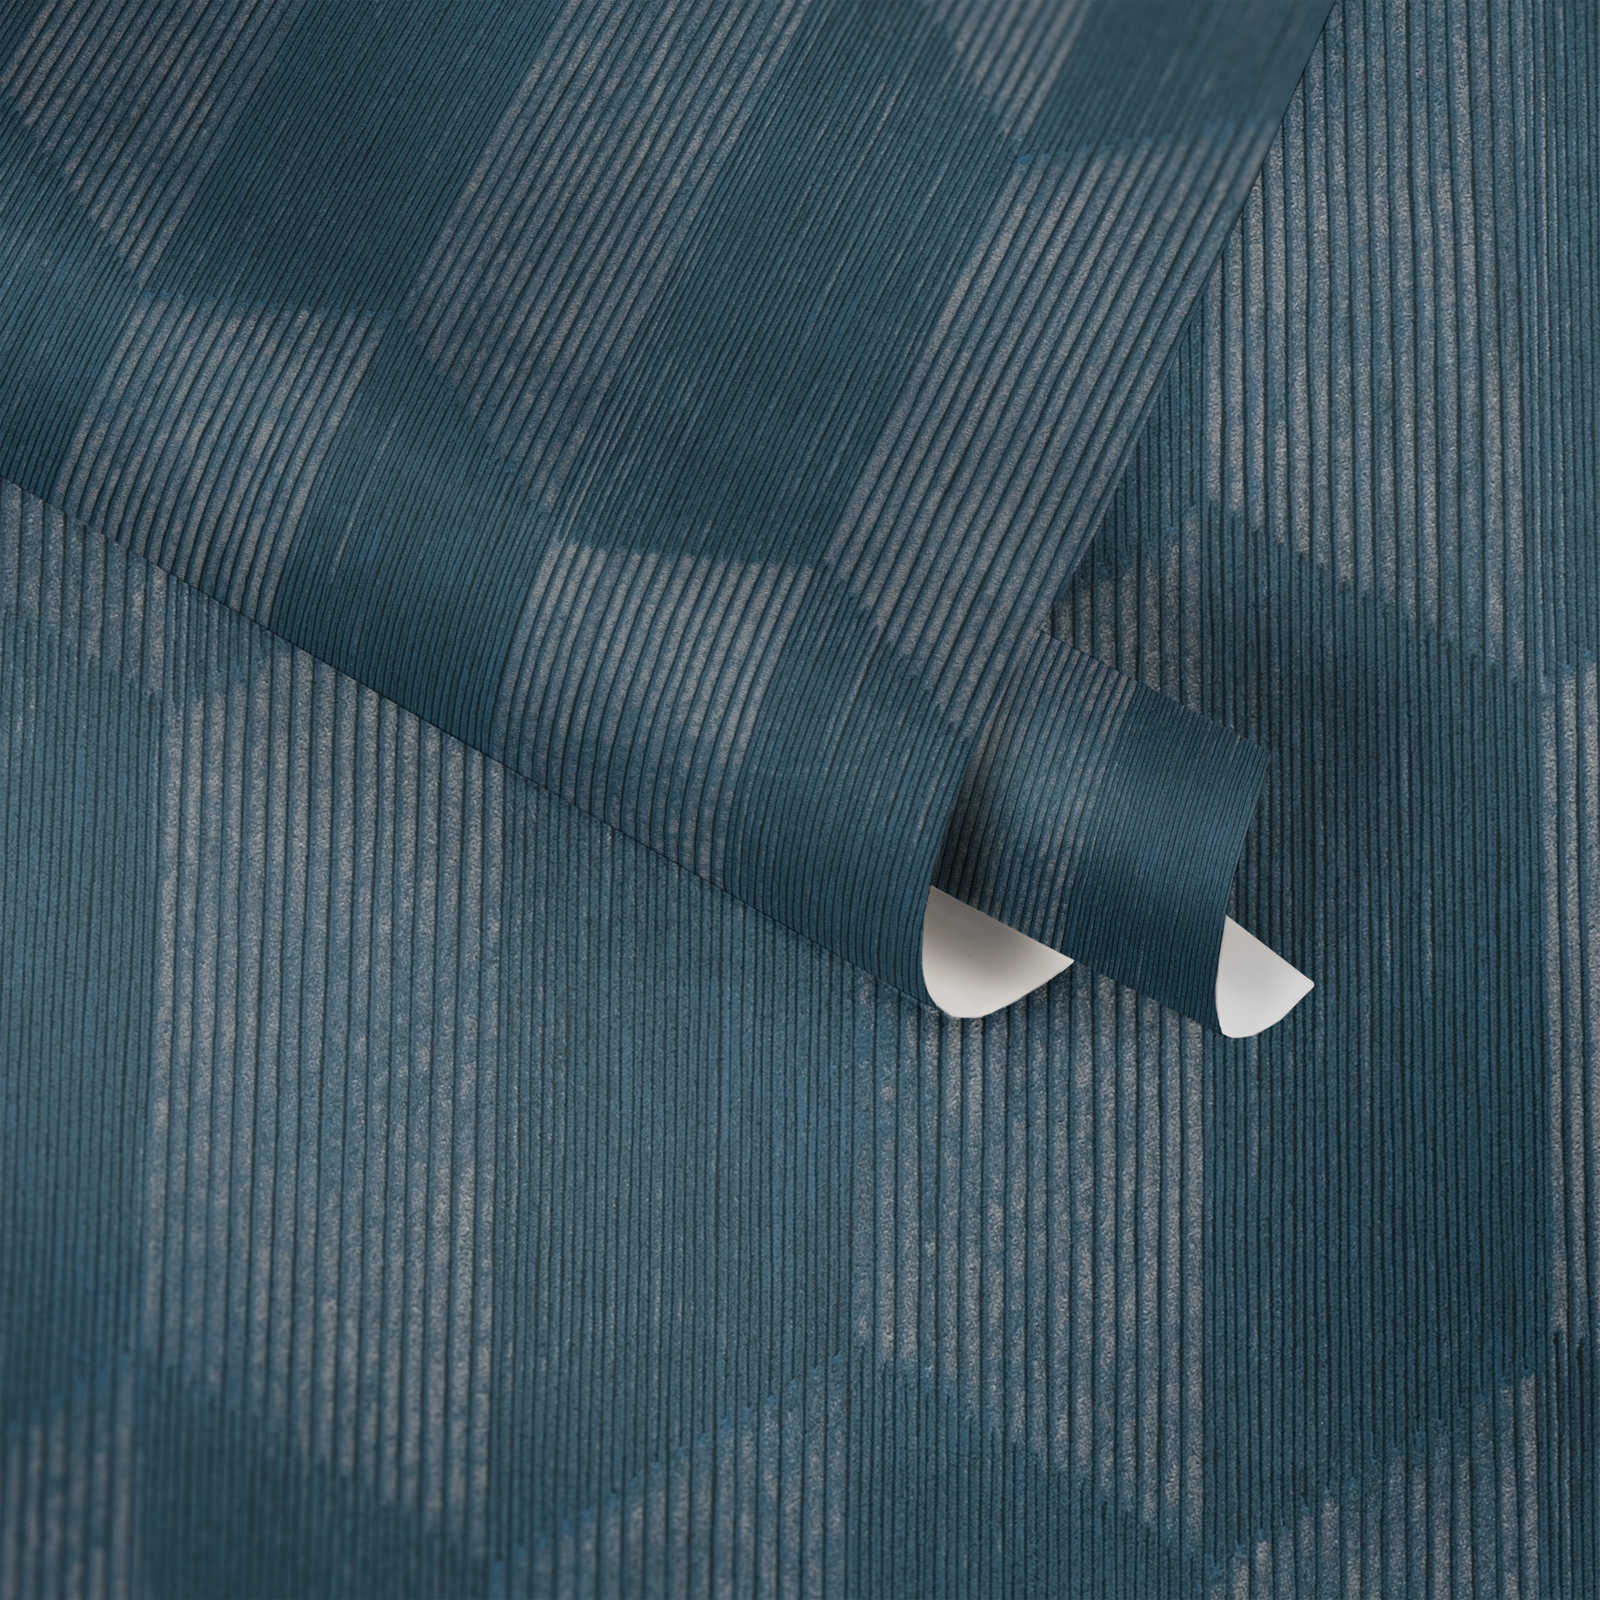             behang 3D patroon met grafisch facet design - blauw
        